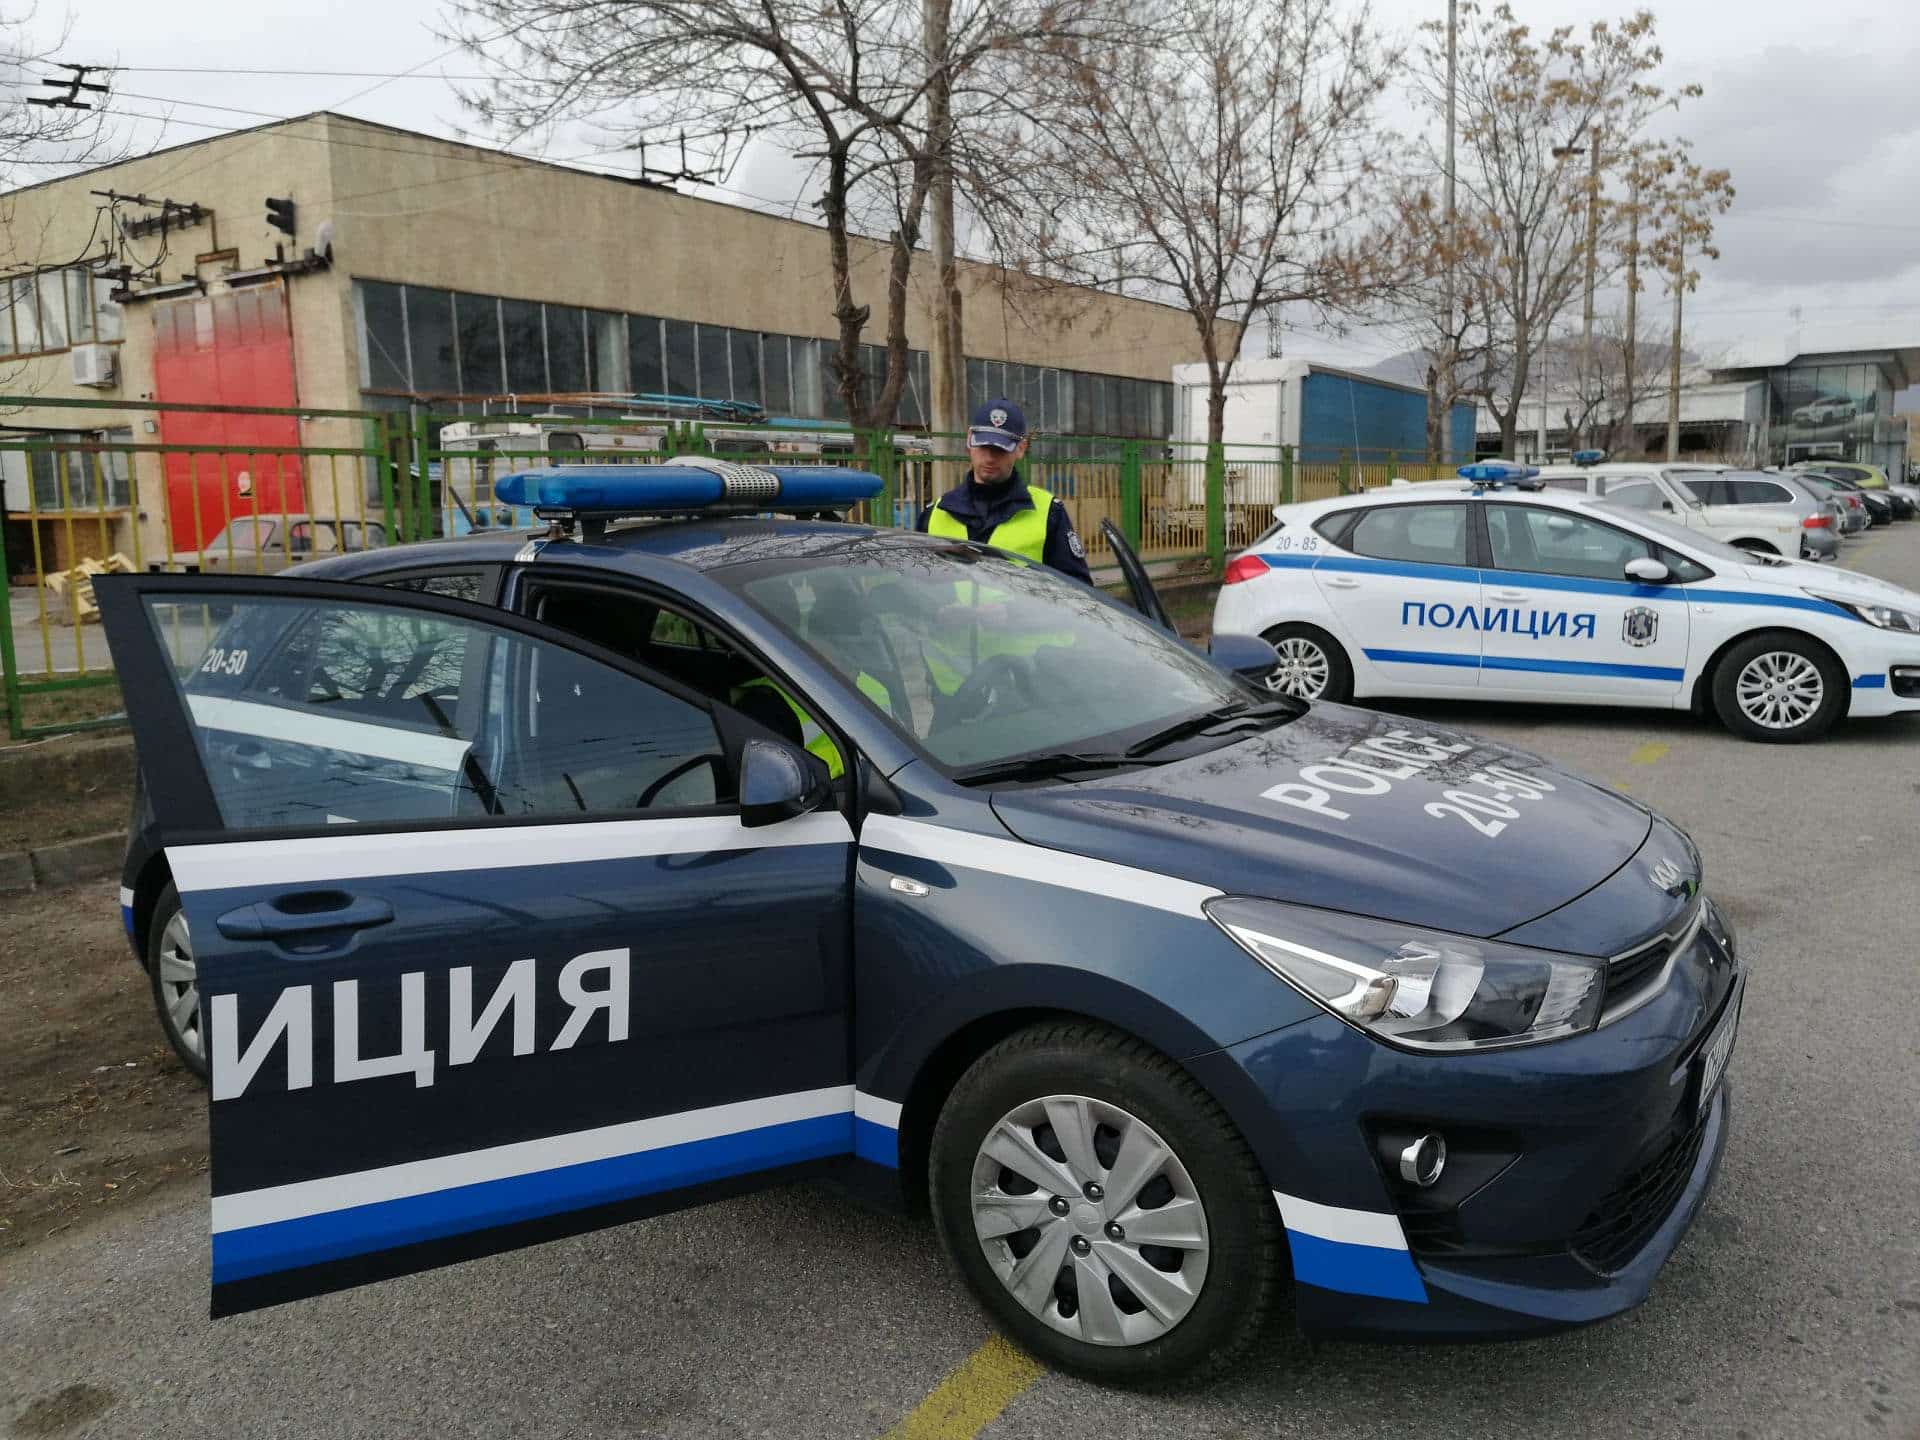 Мащабна полицейска операция е била проведена в Сливенско. При нея